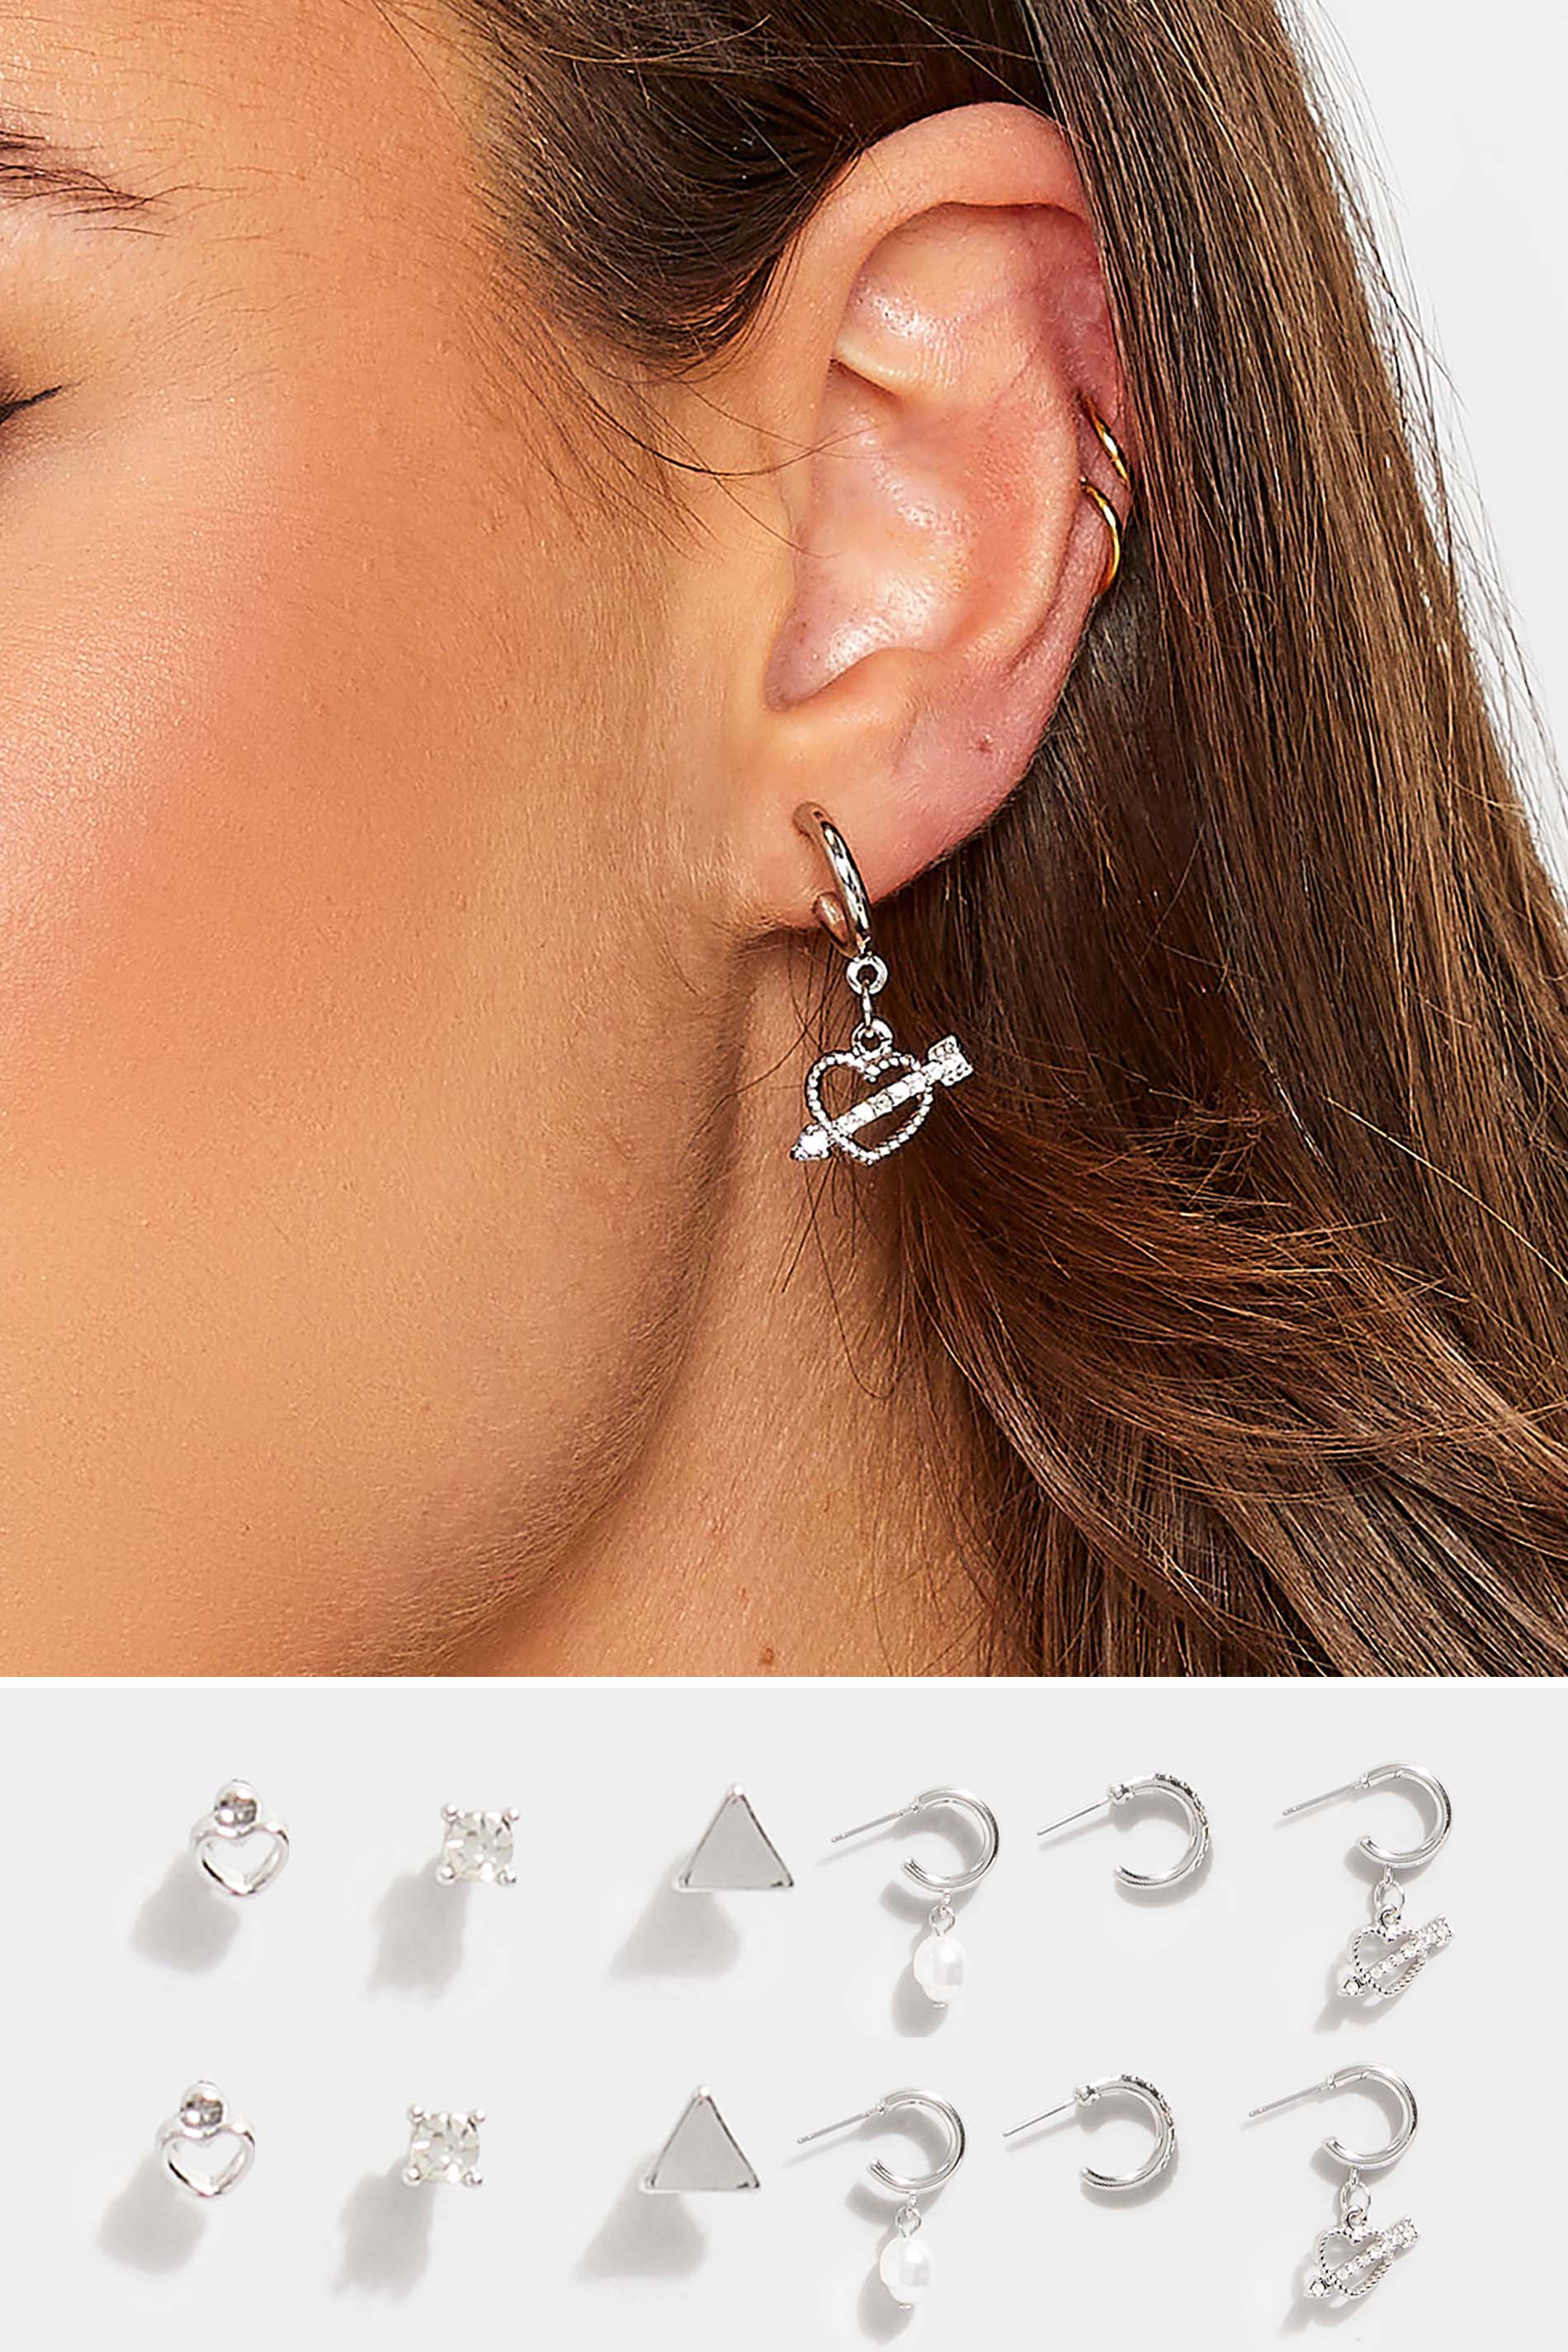 6 Pack Silver Hoop Stud Earrings Set | Yours Clothing 1